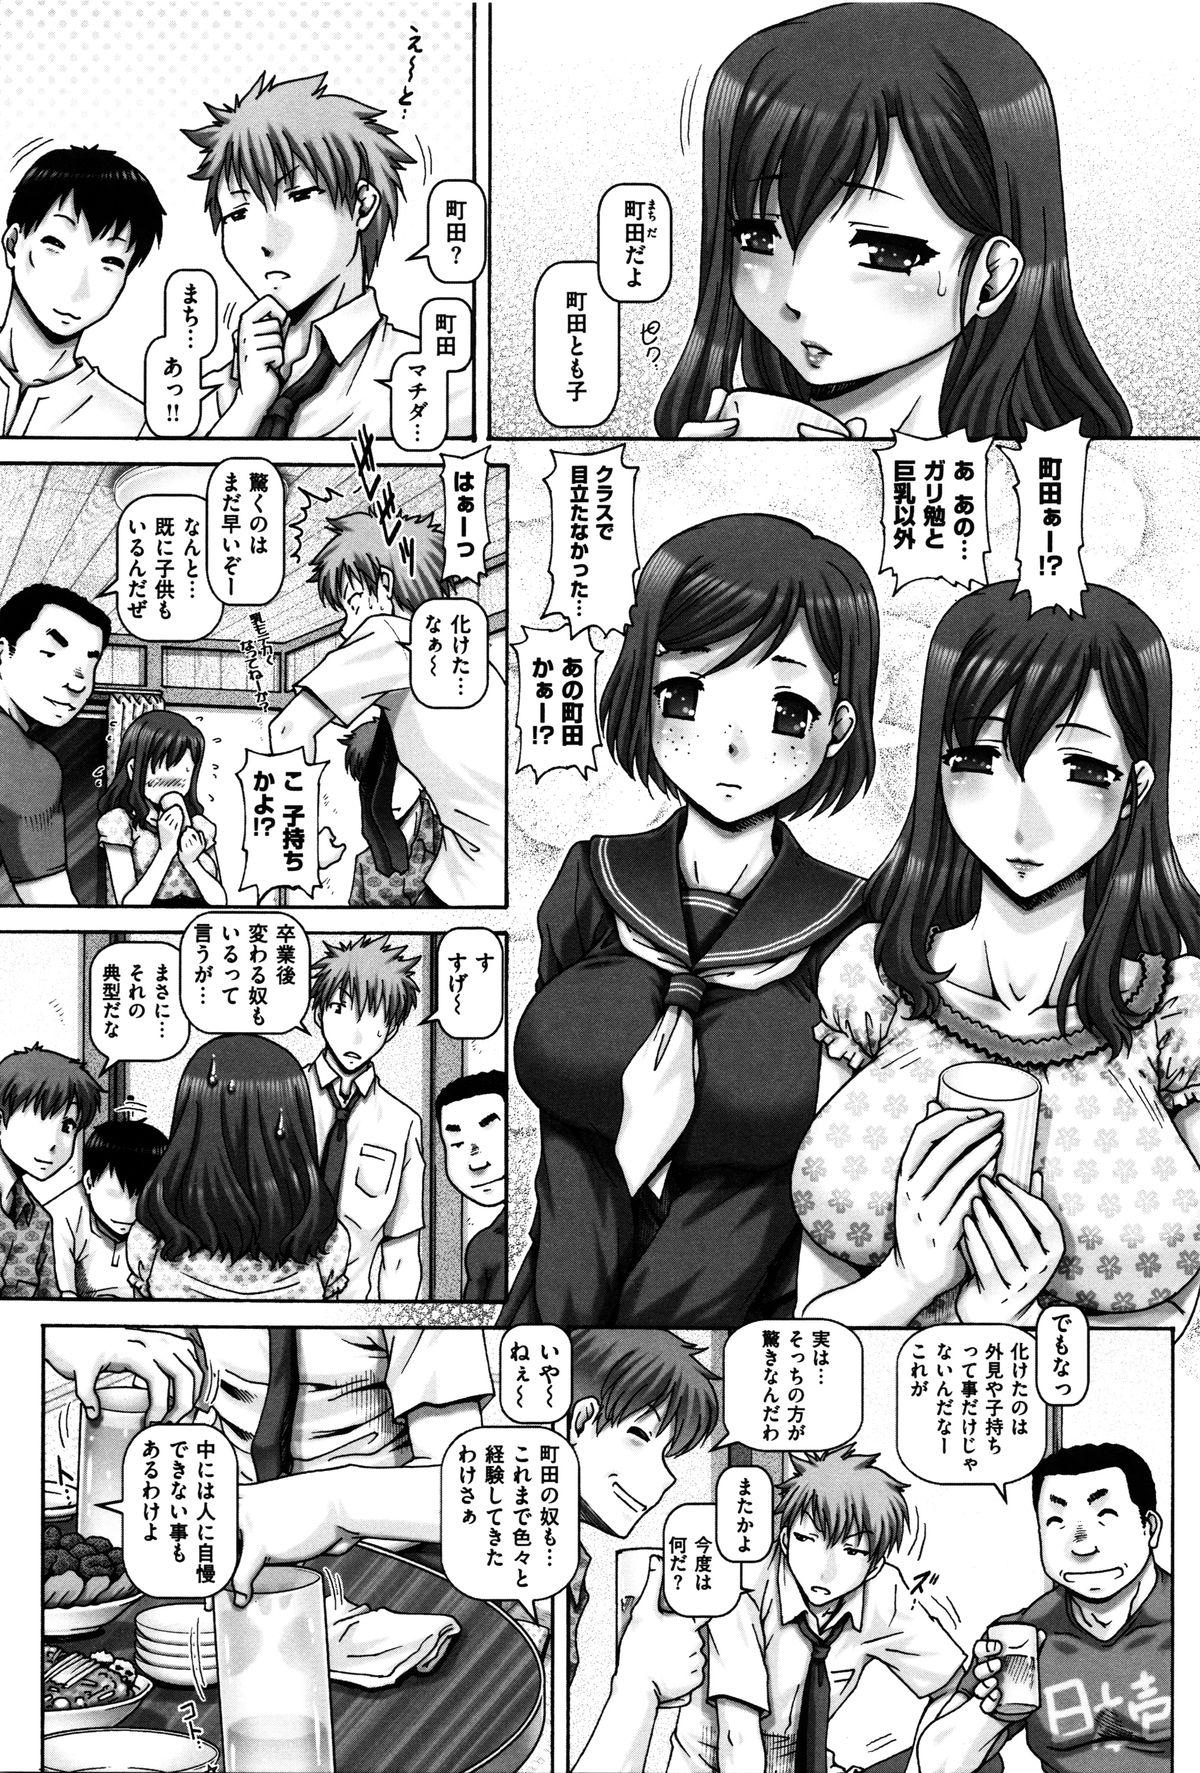 Euro Kachiku Ane - chapter 1,5,7 & 9 Naked Sex - Page 4